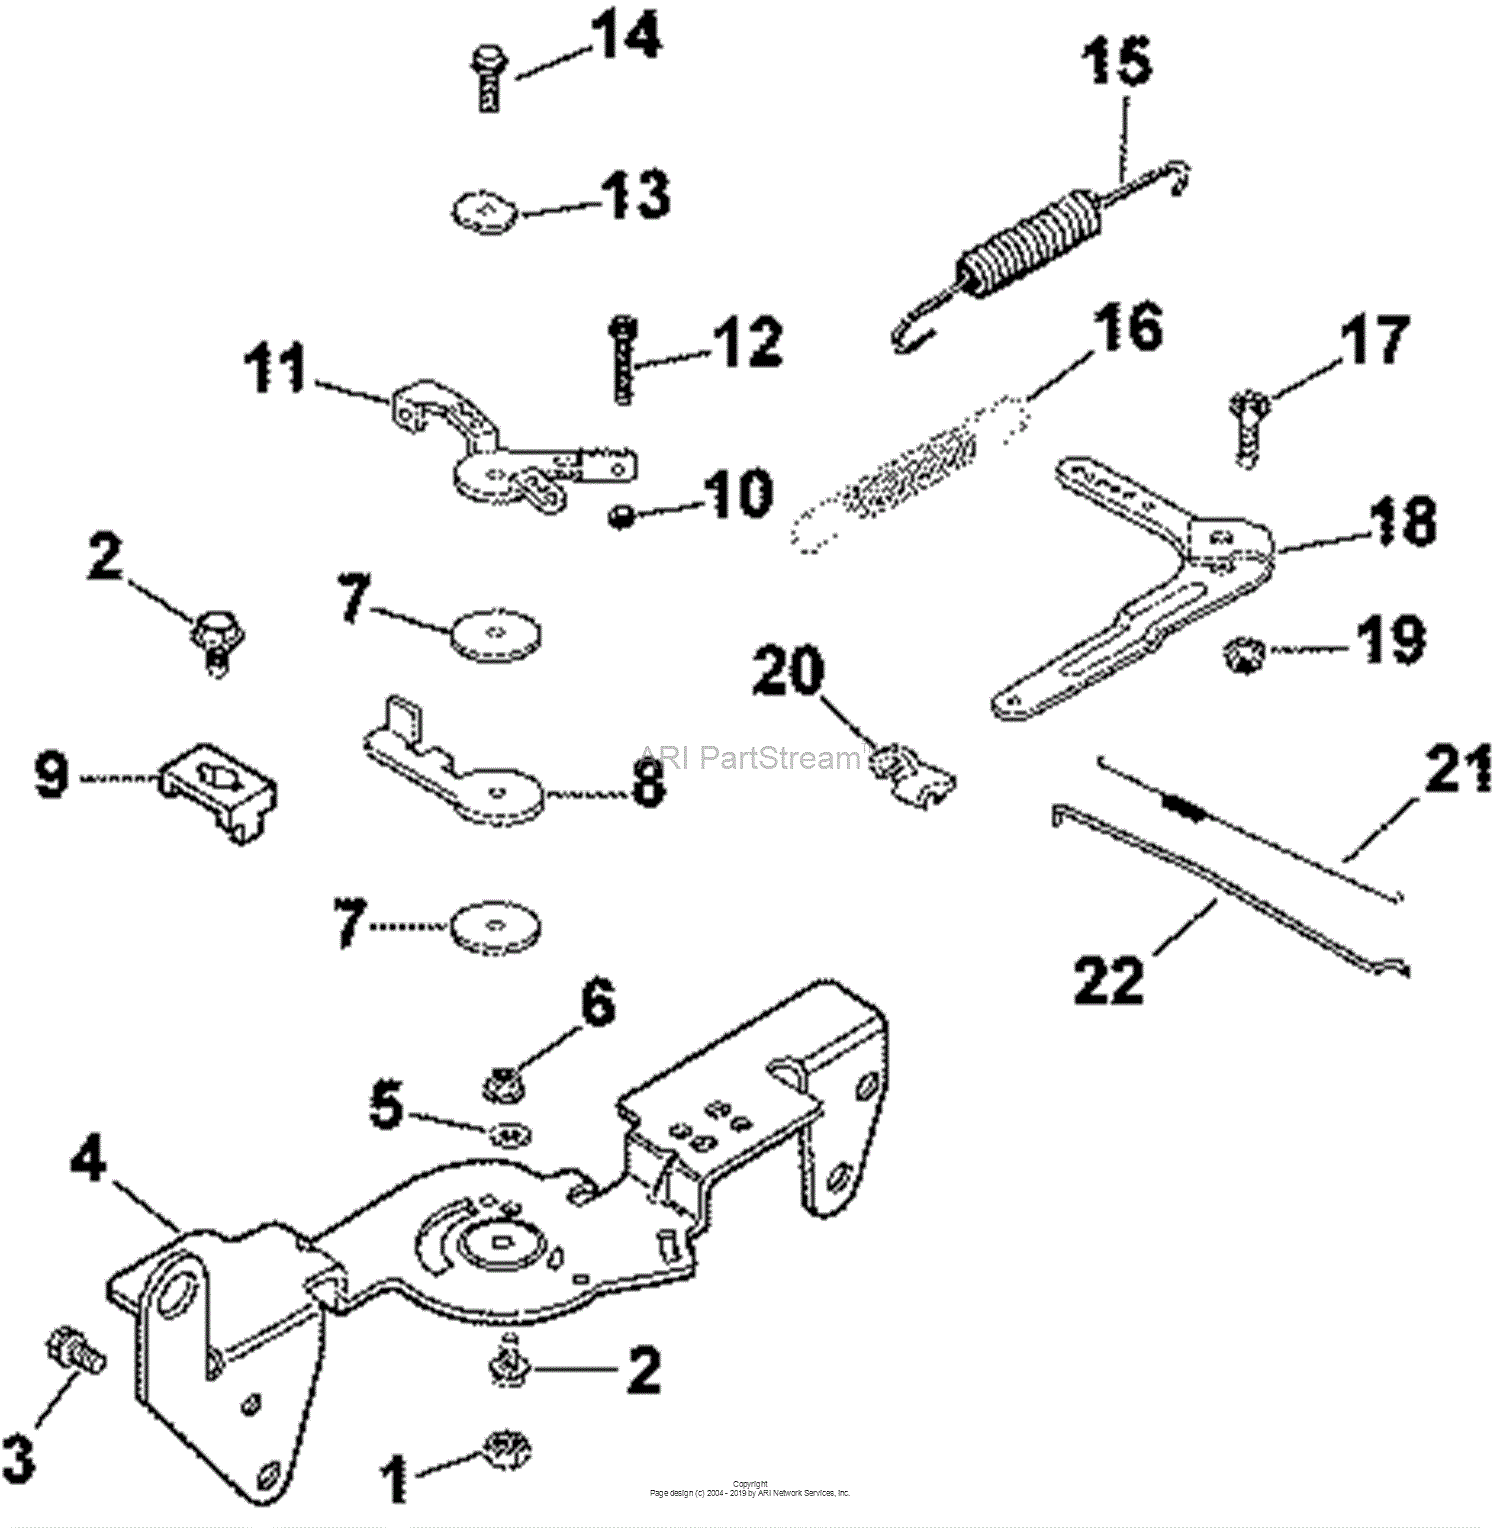 Kohler Ch23s Parts Diagram